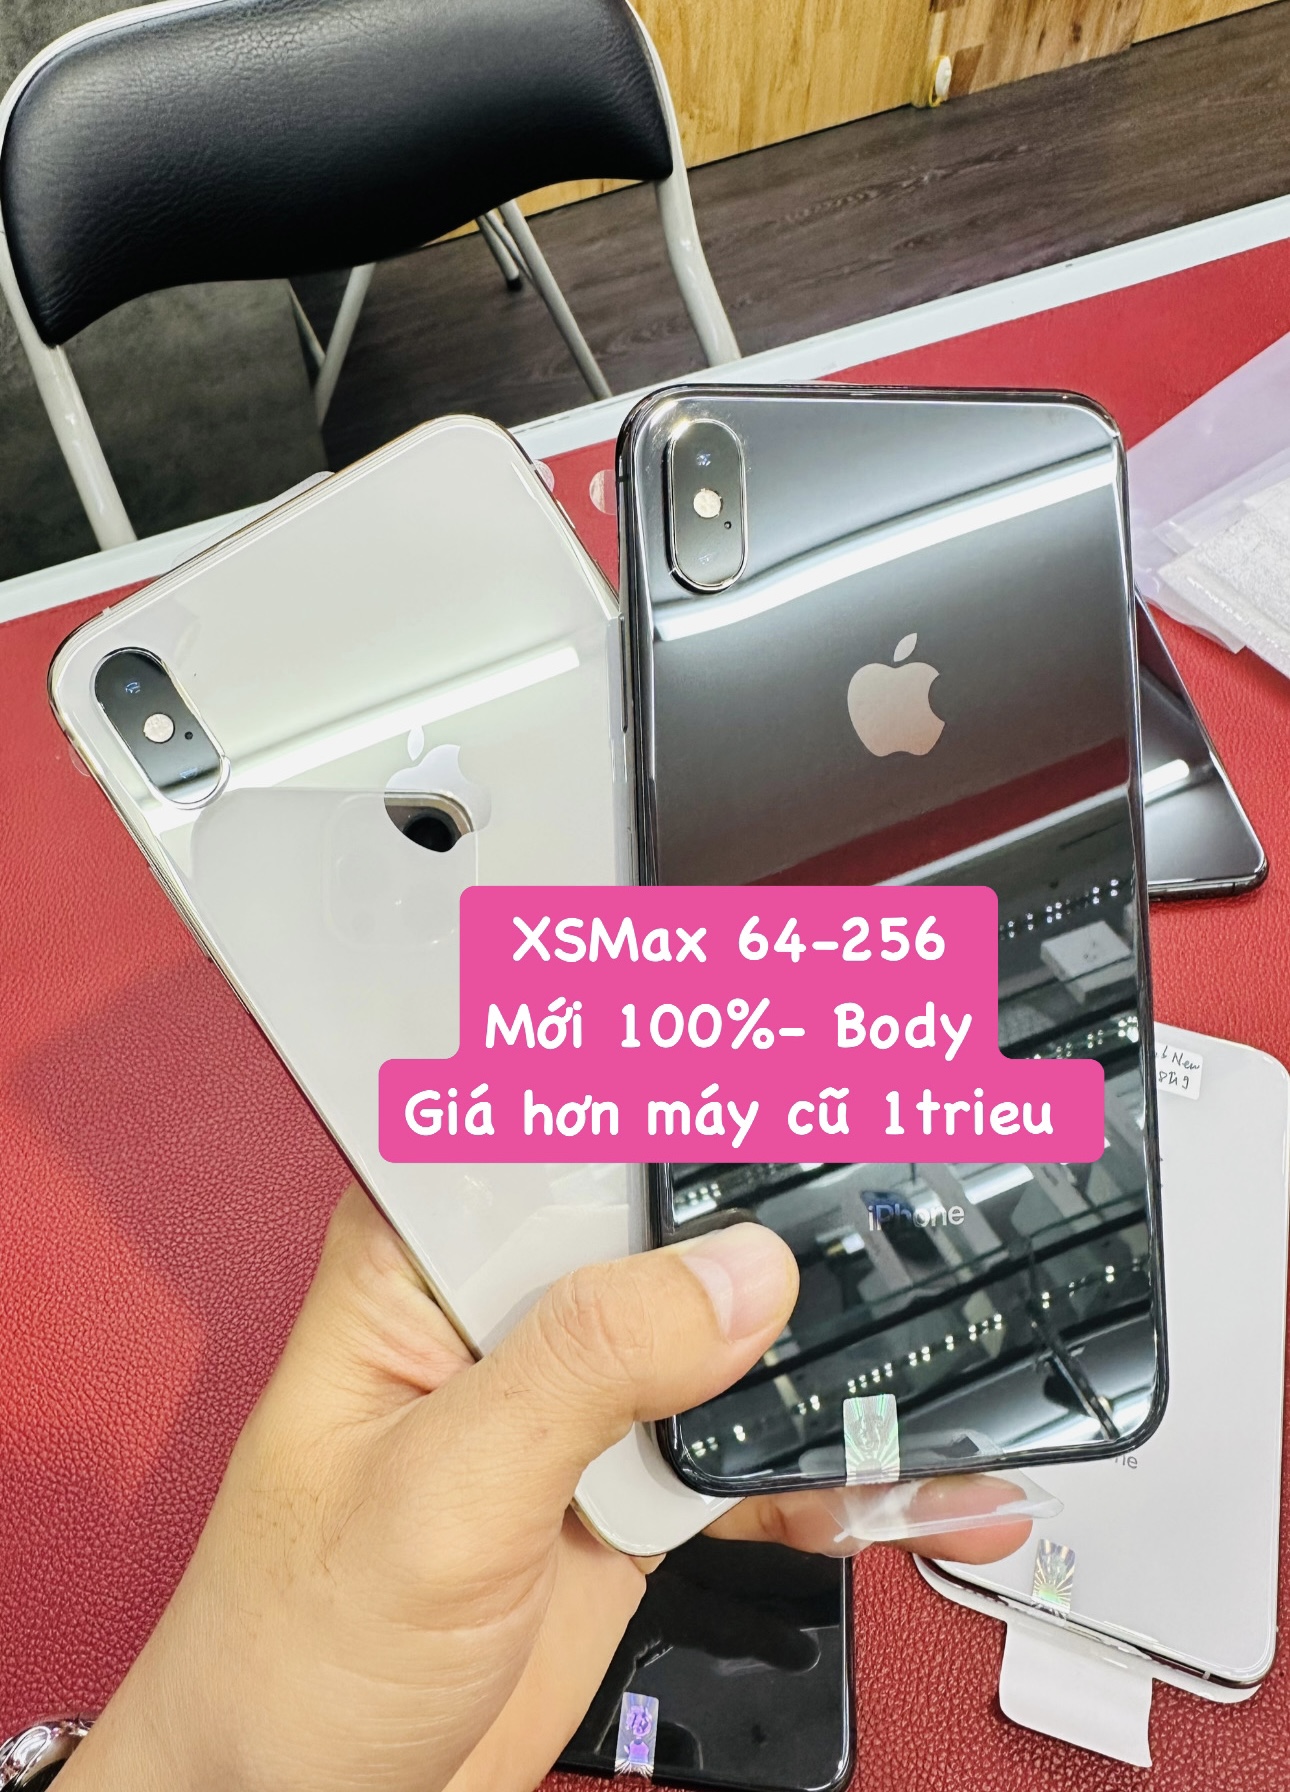 XsMax 64Gb-256Gb mới 100% (Body)